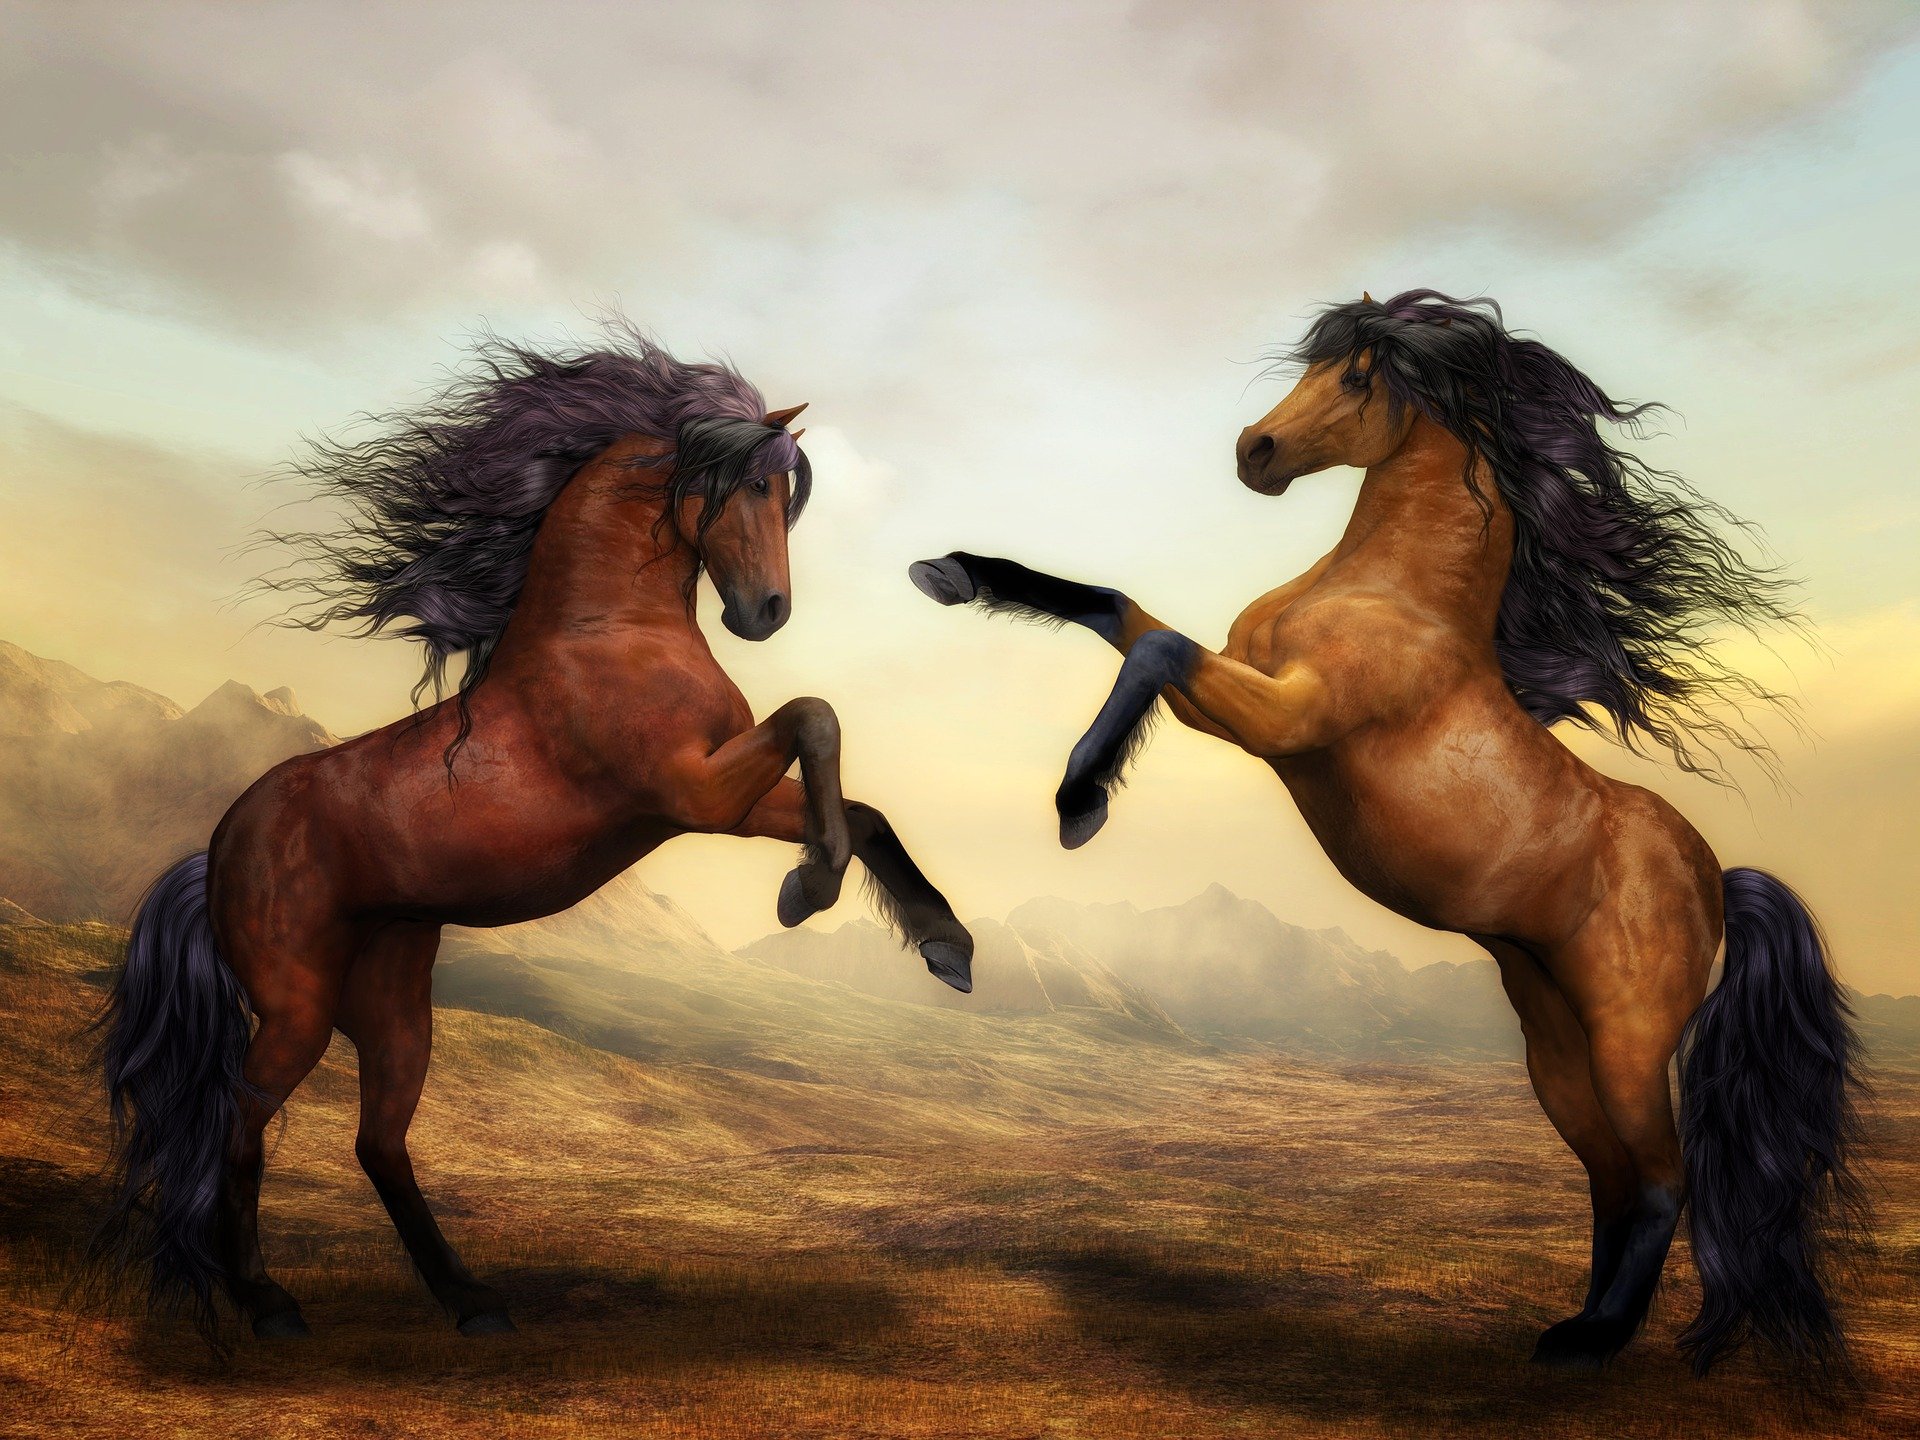 भूरे रंग के कोट वाले दो घोड़े एक दूसरे के पास आ रहे हैं।